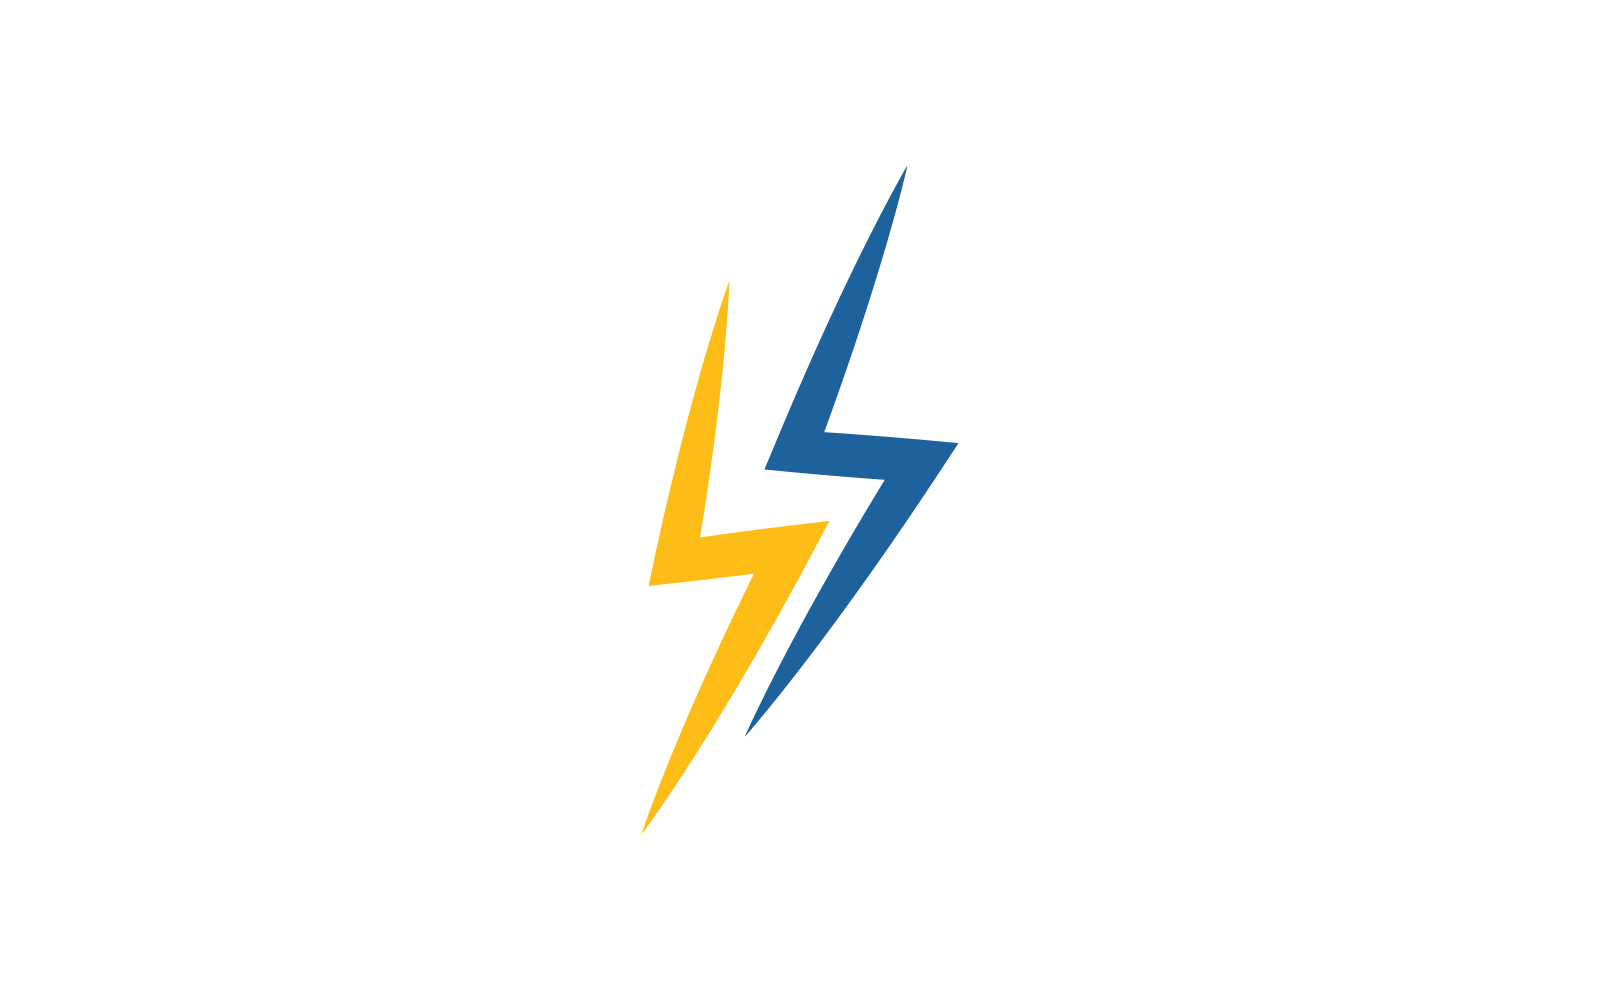 Power lightning power energy logo icon illustration vector